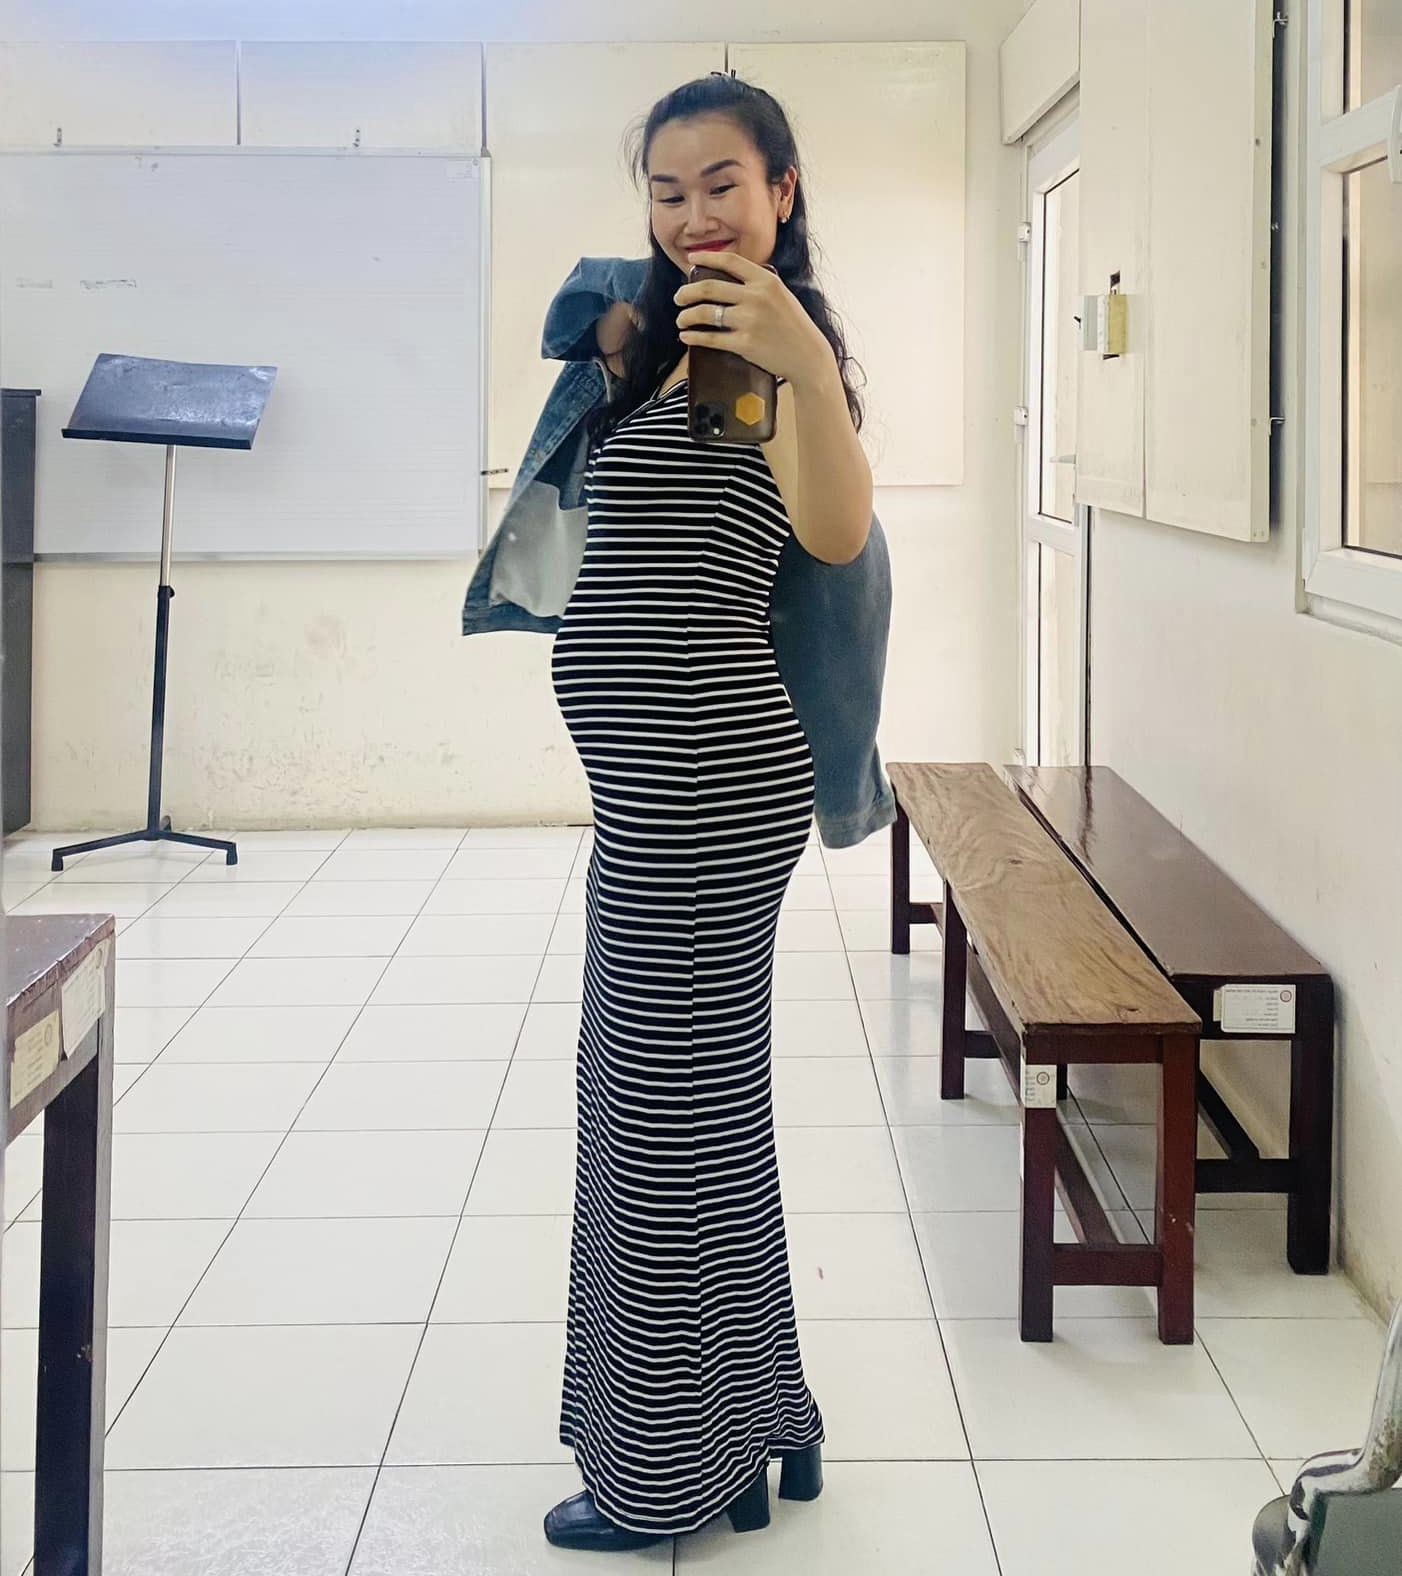 Võ Hạ Trâm hé lộ vóc dáng ở tháng thứ 4 thai kỳ, netizen đặc biệt chú ý một chi tiết ở bụng bầu - ảnh 3